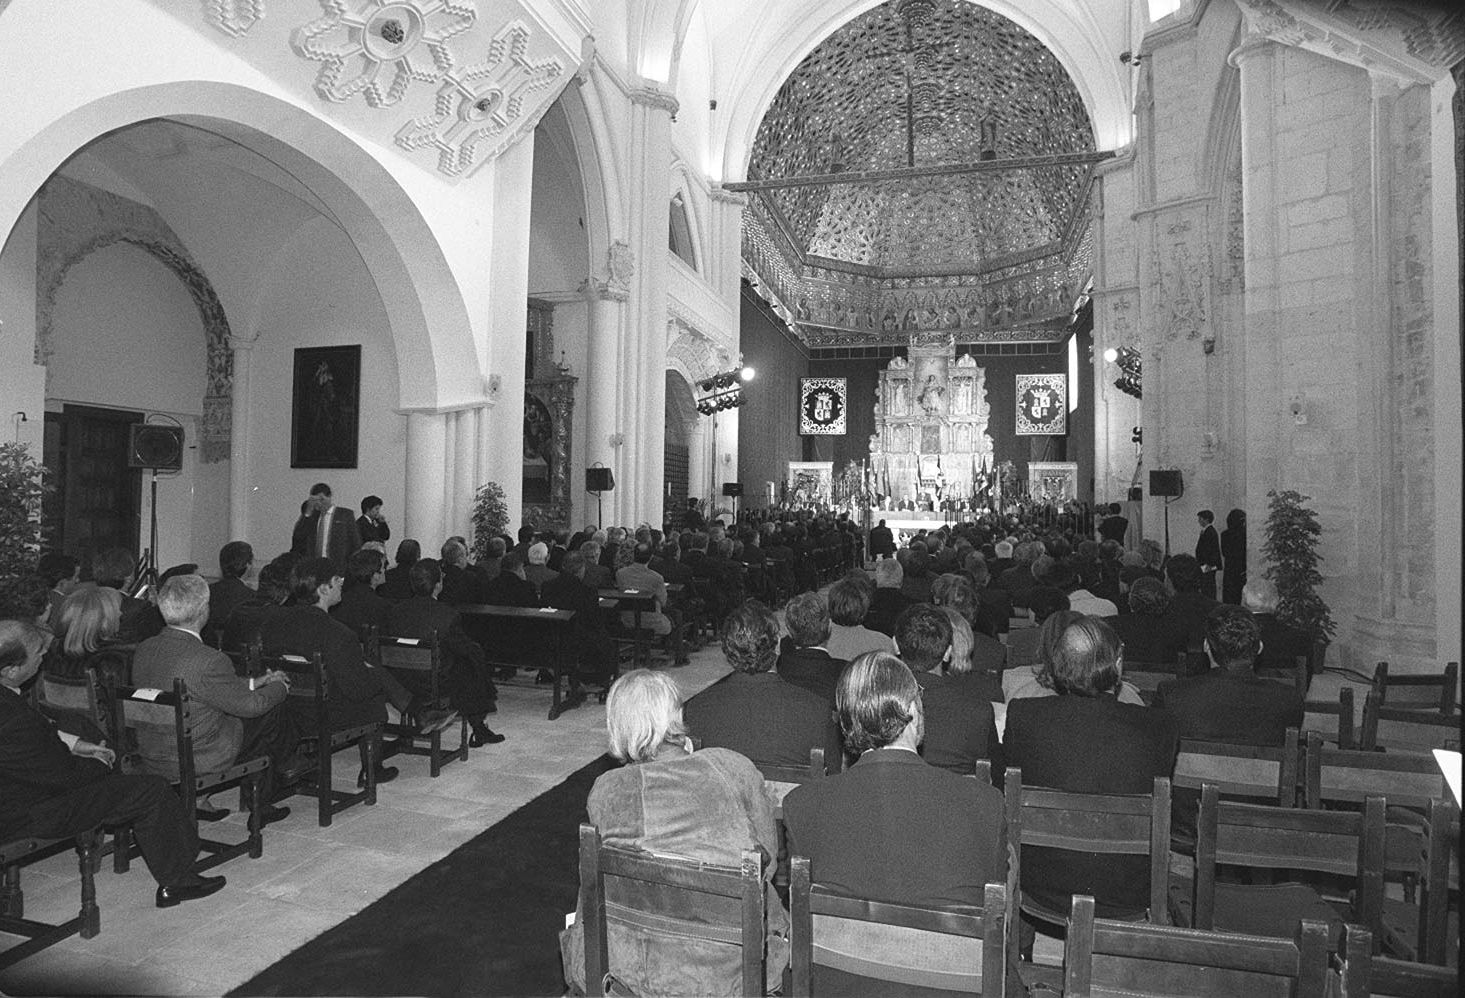 1998. Los parlamentarios de Castilla y León volvieron a la iglesia del Real Monasterio de Santa Clara de Tordesillas (Valladolid) para conmemorar el XV aniversario del Estatuto de Autonomía de Castilla y León, el mismo lugar en el que se constituyeron.